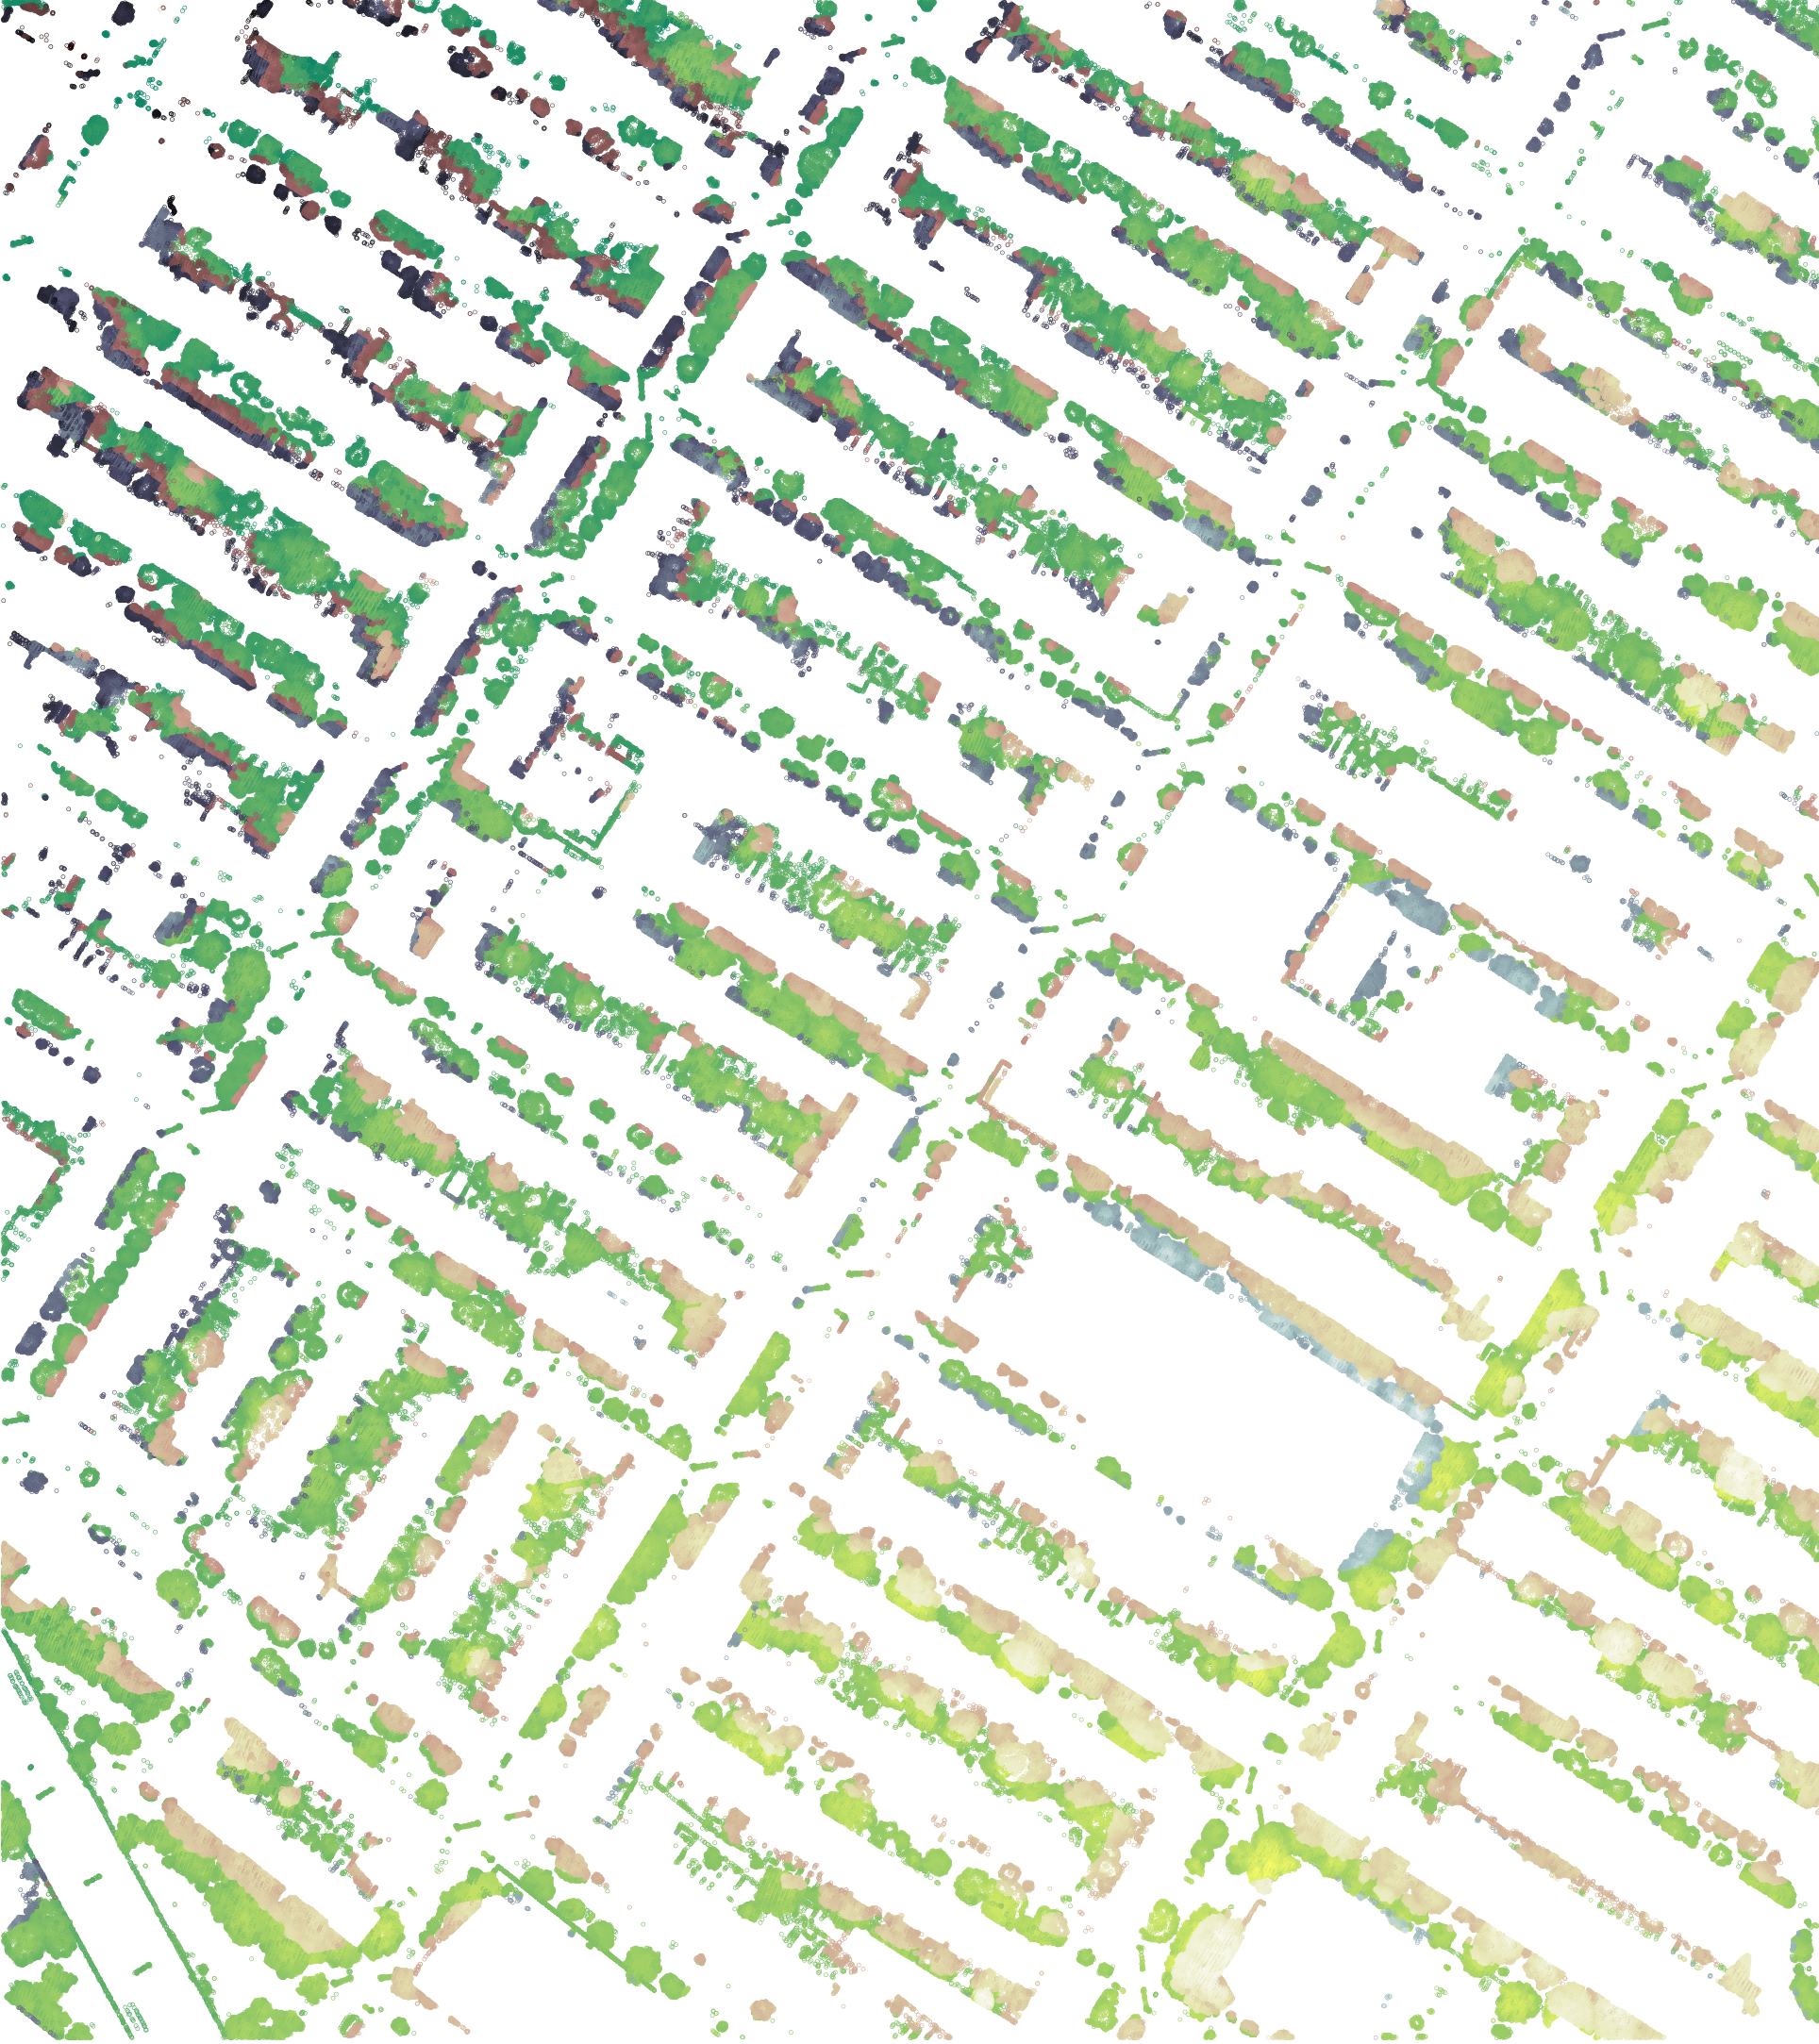 Інструмент 3D-картування Tree Folio NYC дослідив парк Слоуп у Брукліні